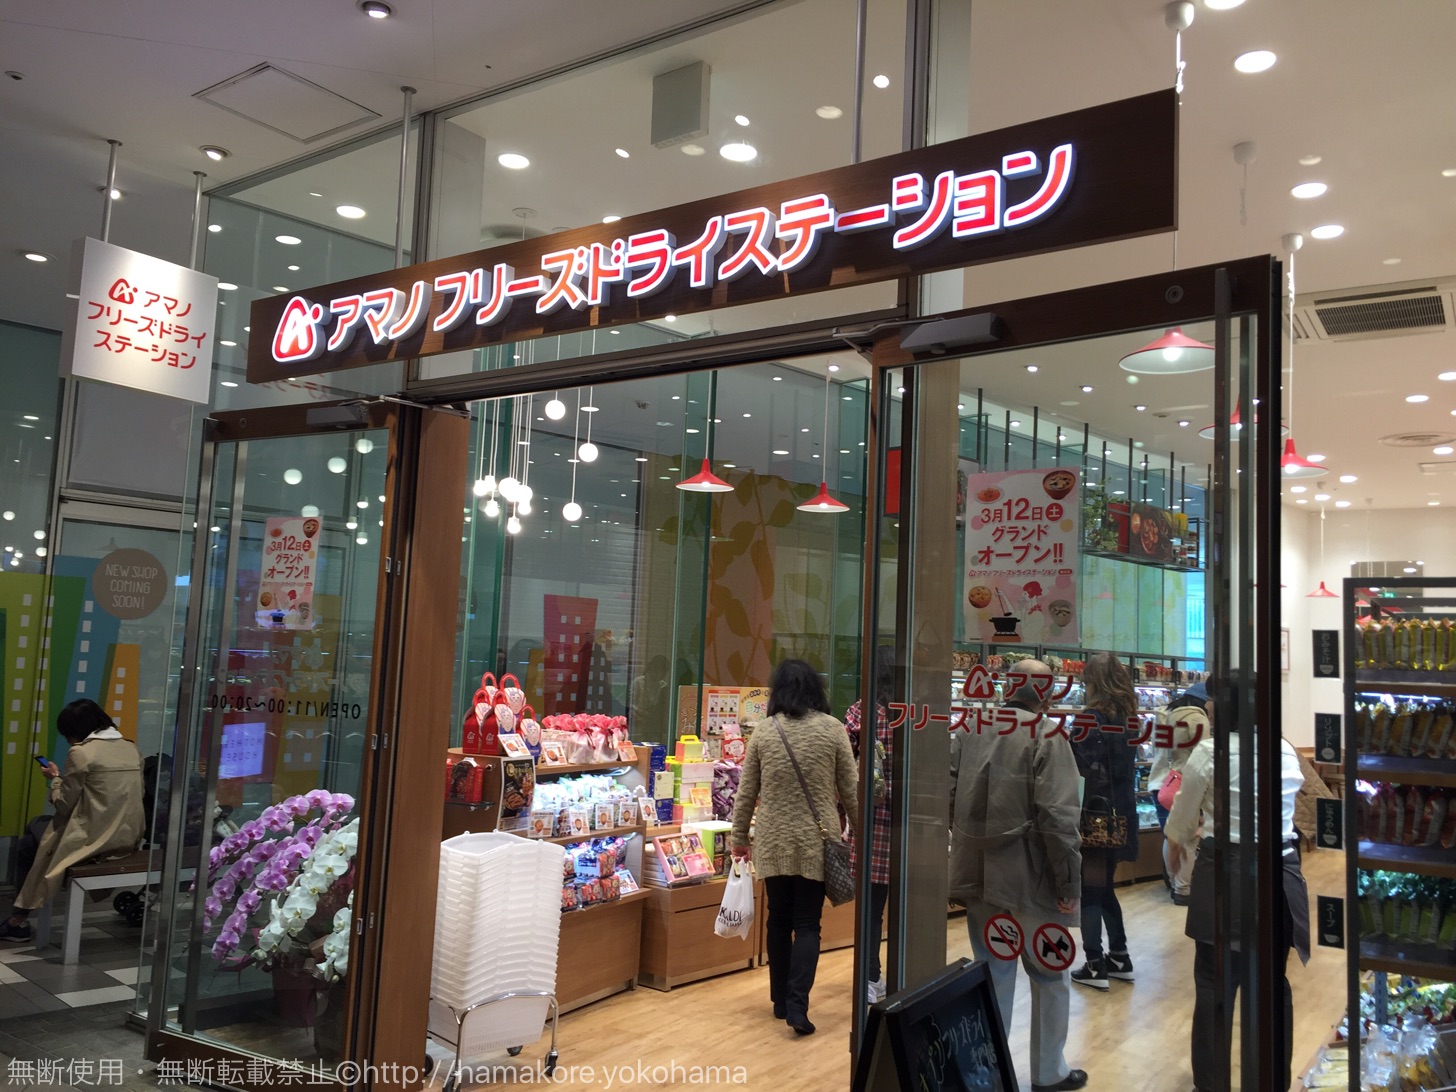 横浜にアマノフリーズドライステーションが誕生！選べるみそや具・ショップ限定商品も販売